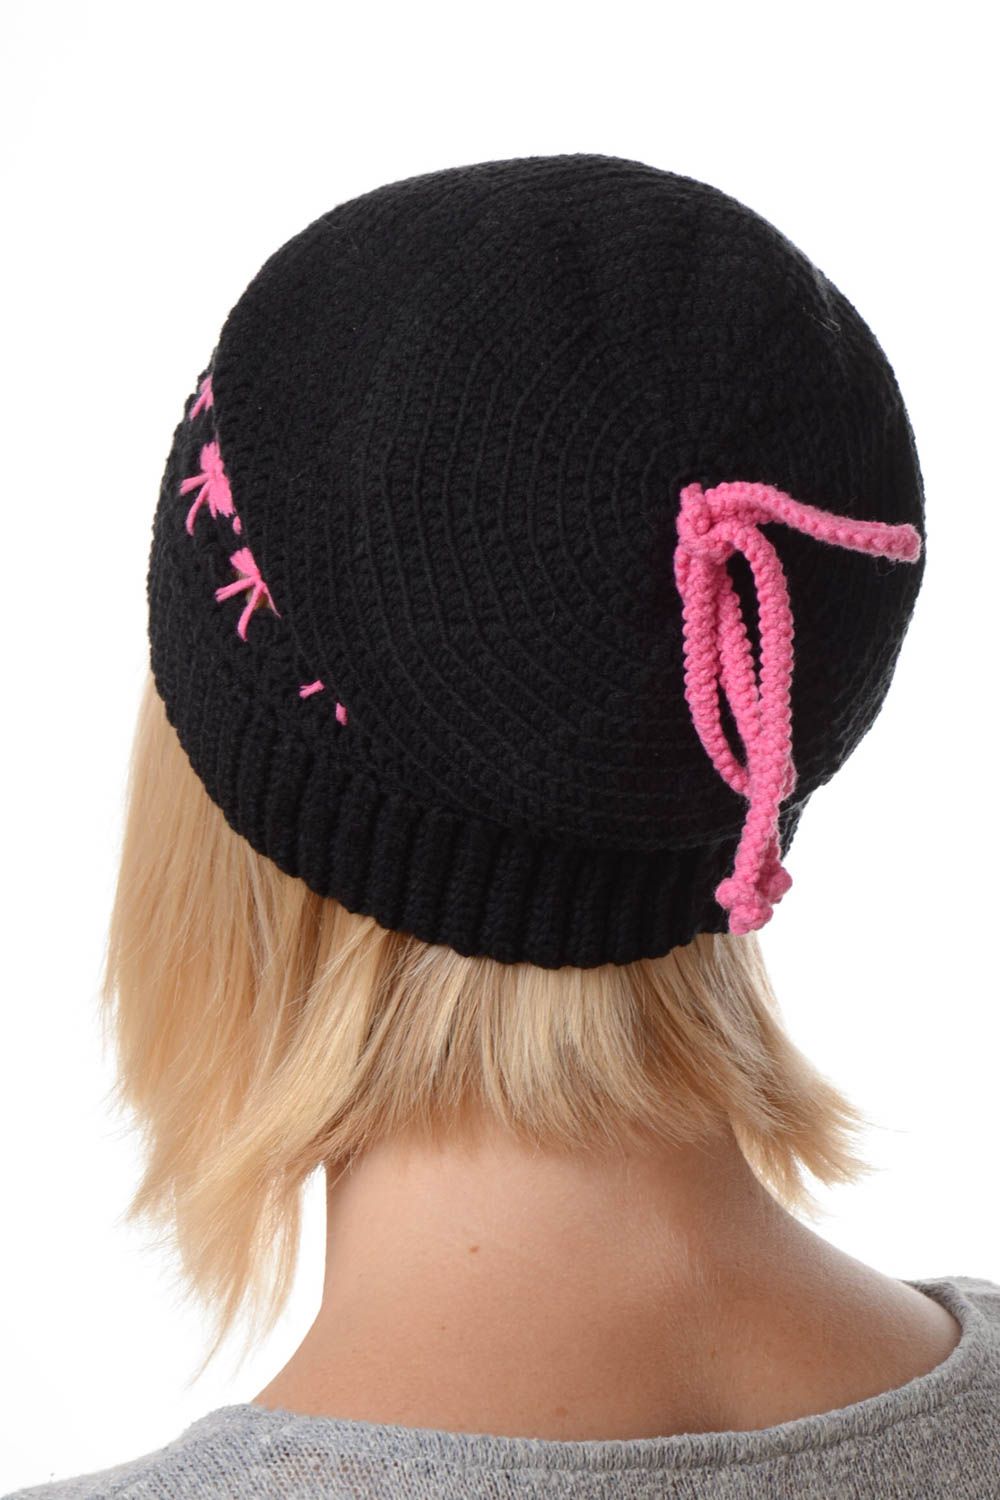 Handmade hat designer hat warm hat unusual beanie crocheted hat gift for women photo 2